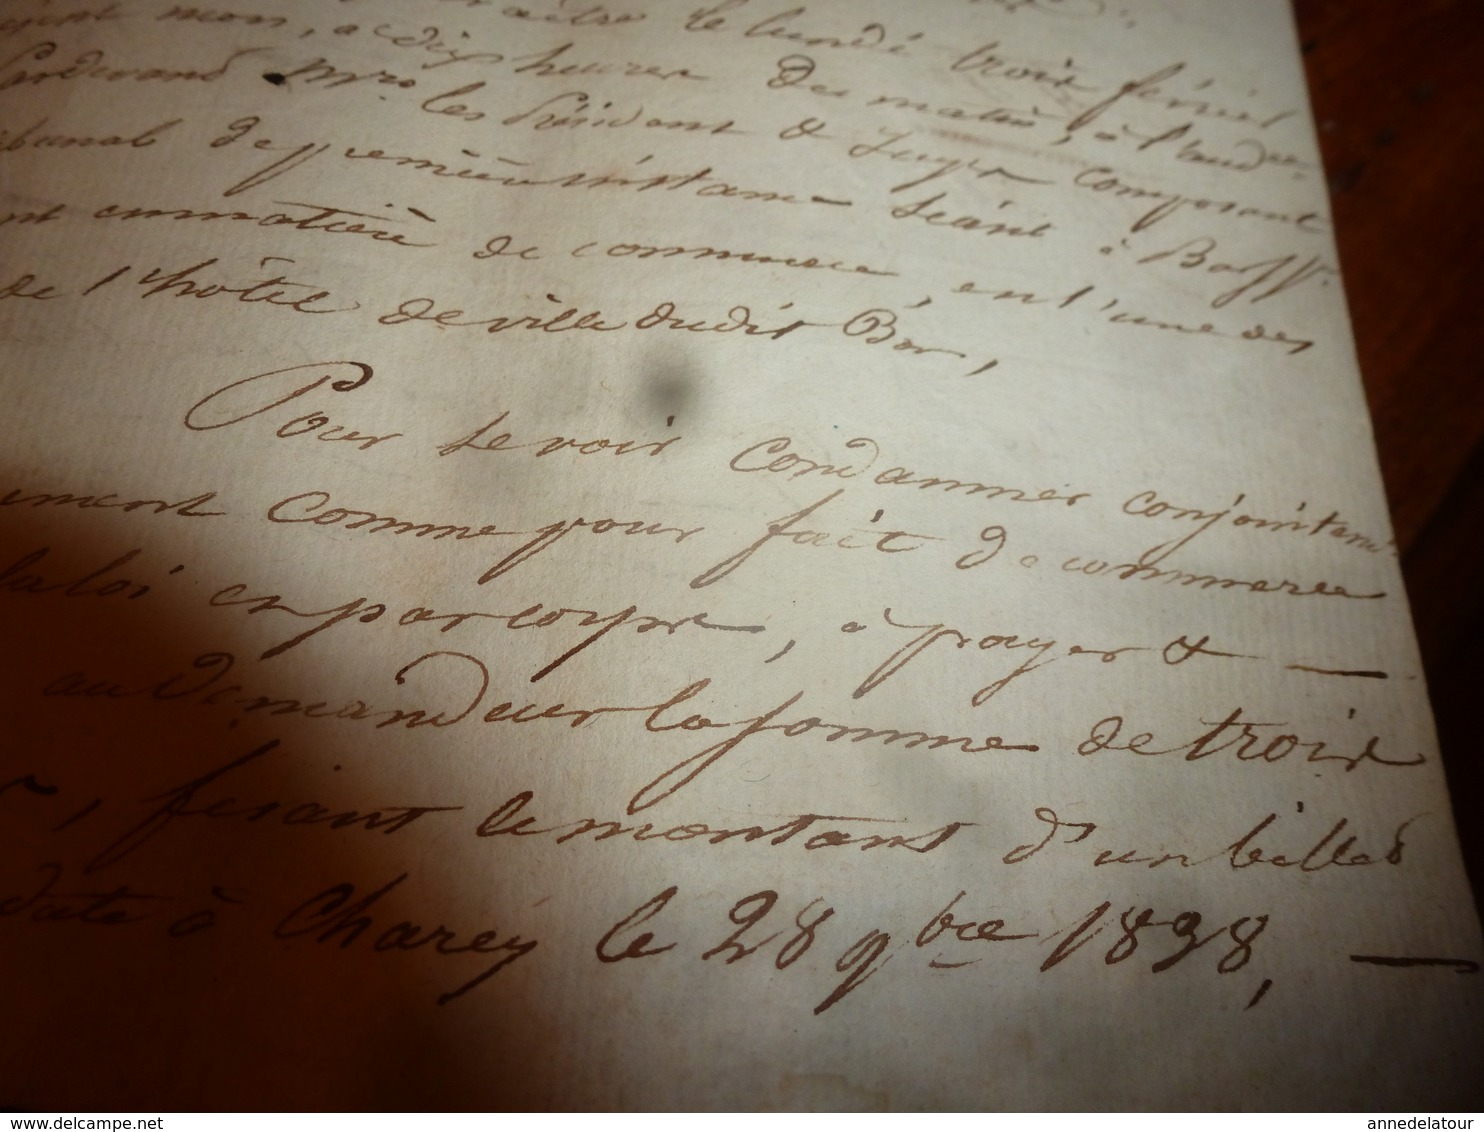 1840 Liasse de Manuscrits notariés avec cachets (sec ,mouillés) concerne Baillieux,Regnault à Mussy-su- Seine, etc